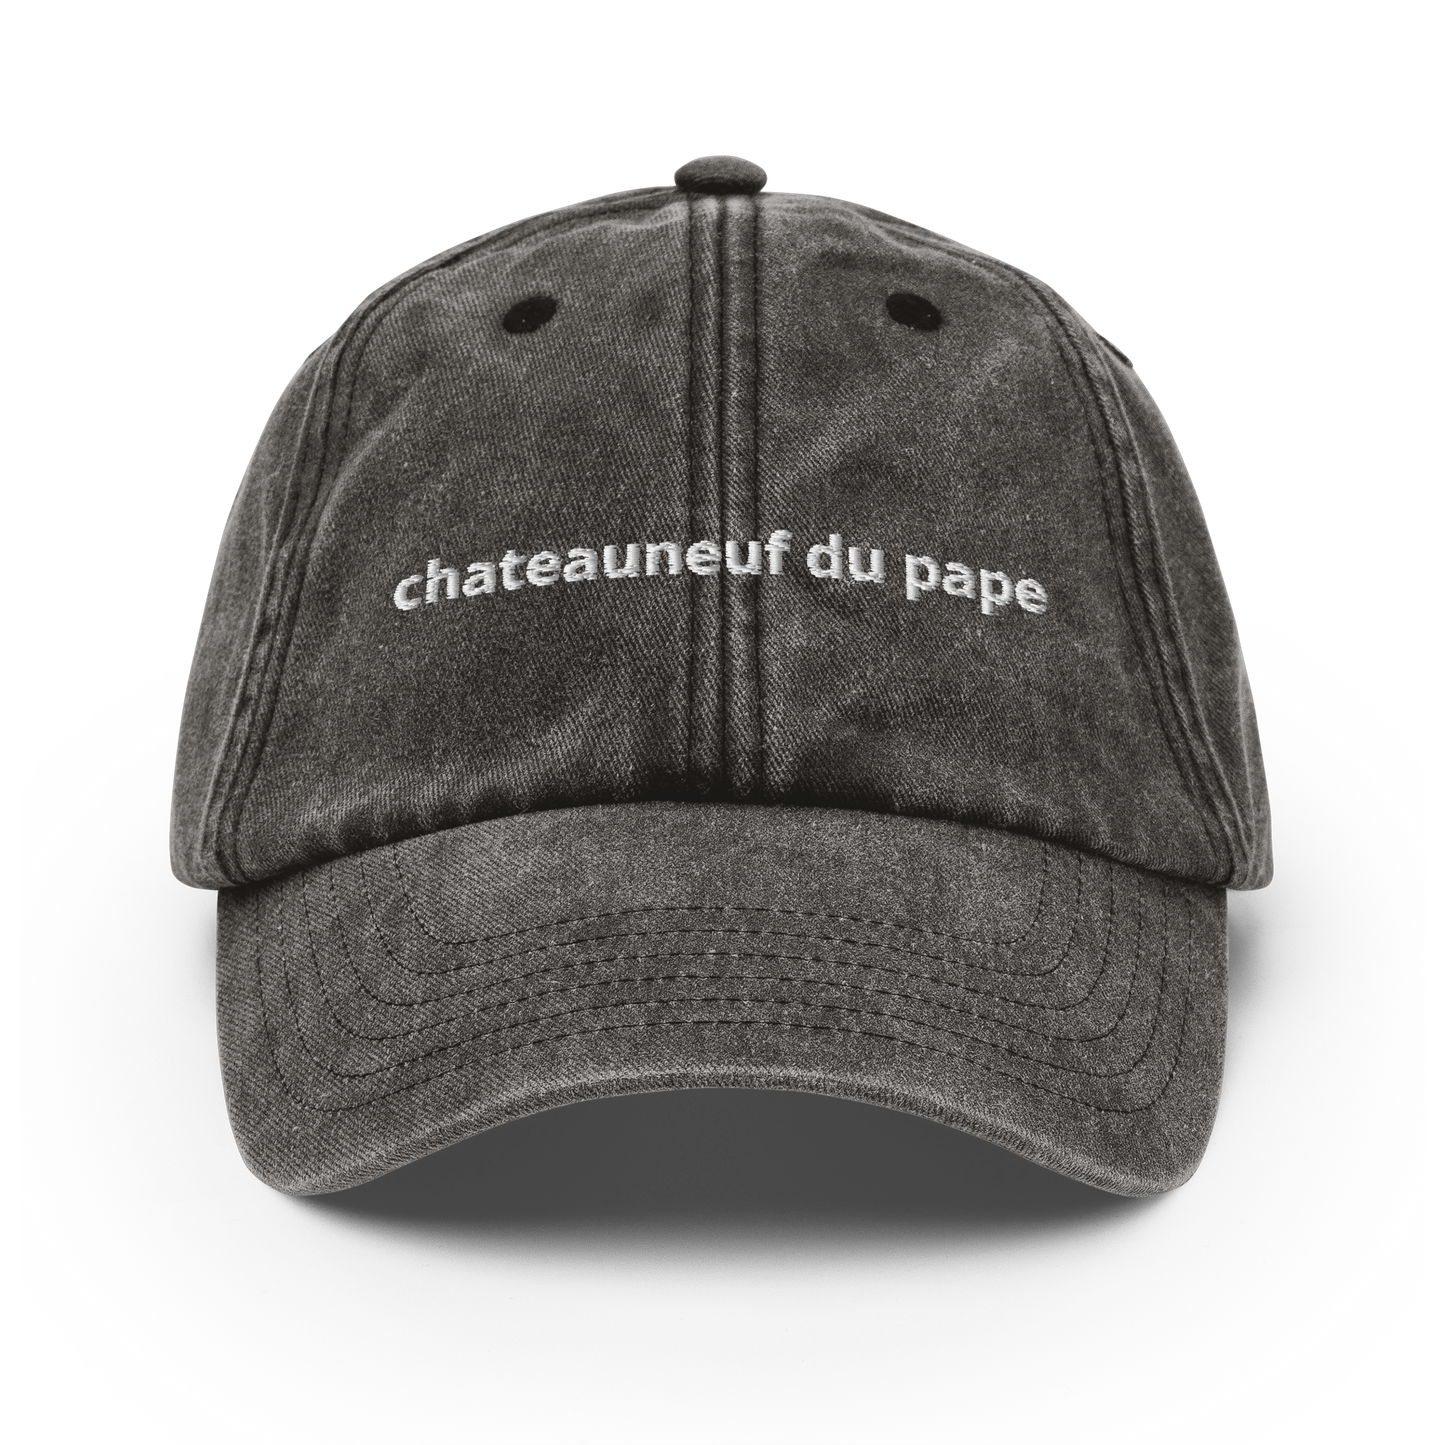 chateauneuf du pape - Vintage Hat